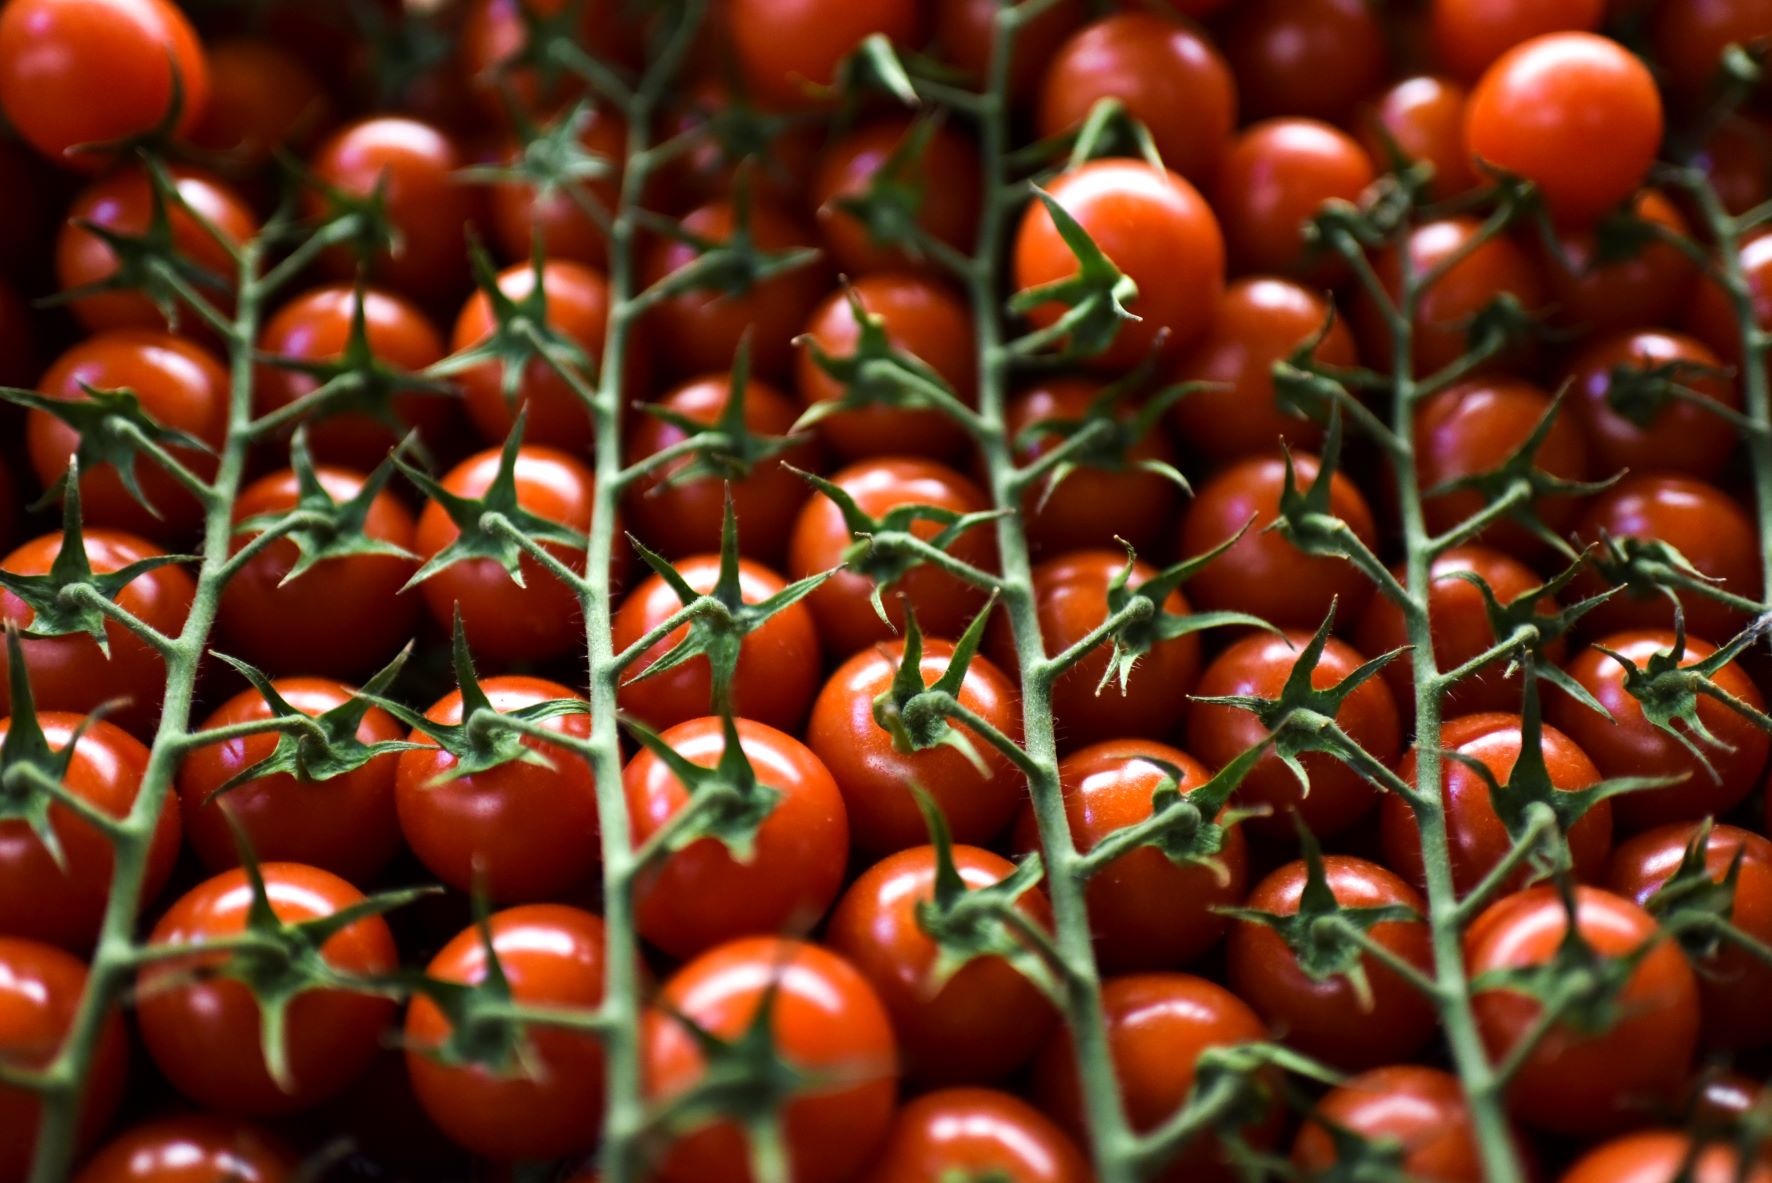 Βρετανία: Σοβαρές ελλείψεις στις ντομάτες – Πλήγμα στις εισαγωγές, άδεια τα ράφια